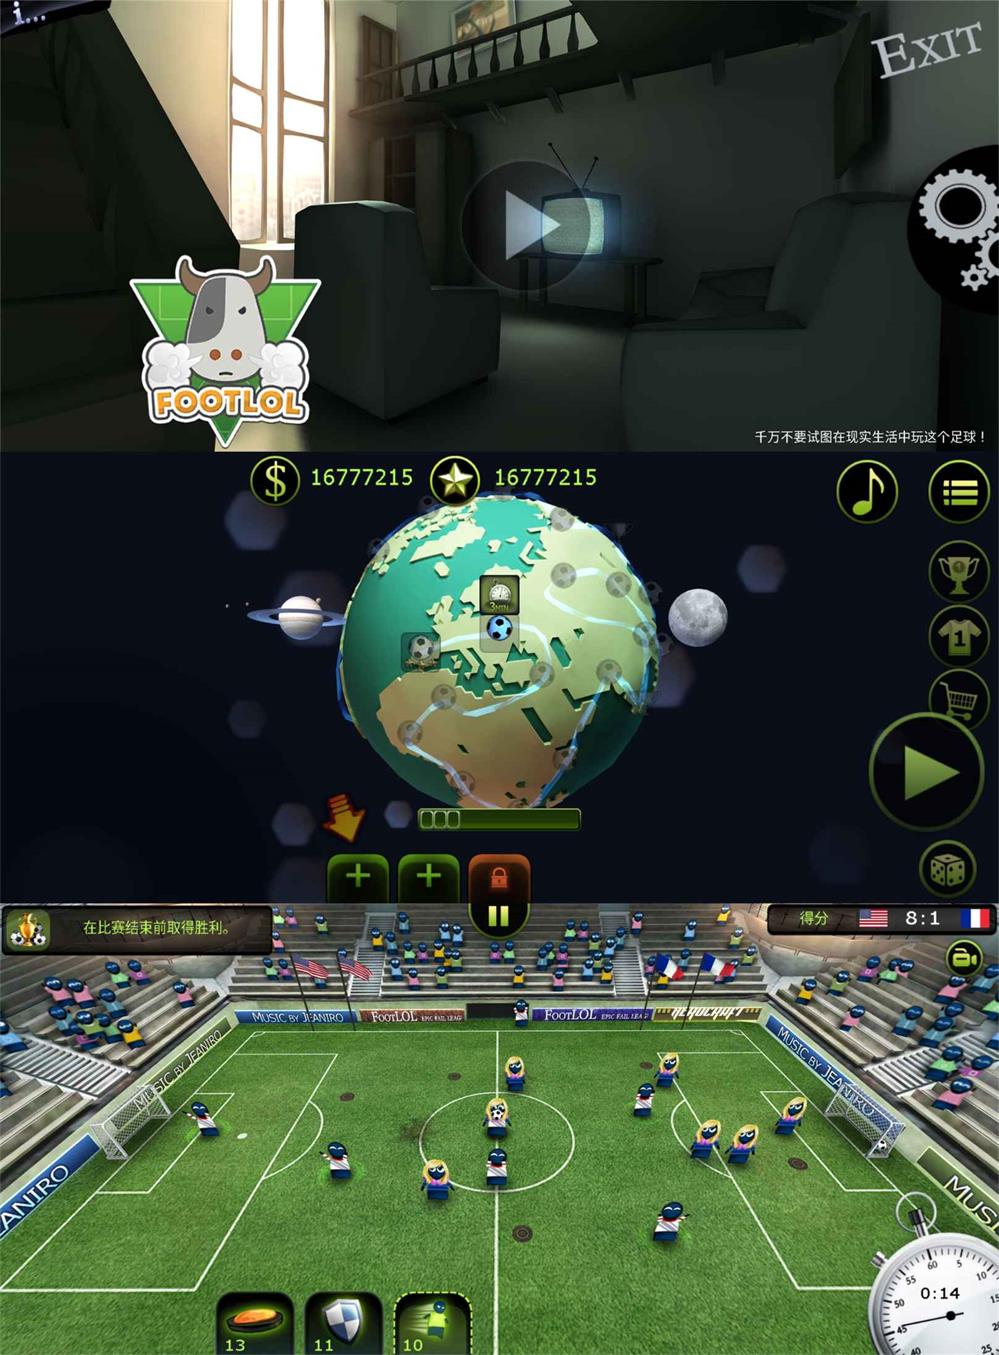 魔性的对战IO游戏 疯狂的足球-小灰兔技术频道